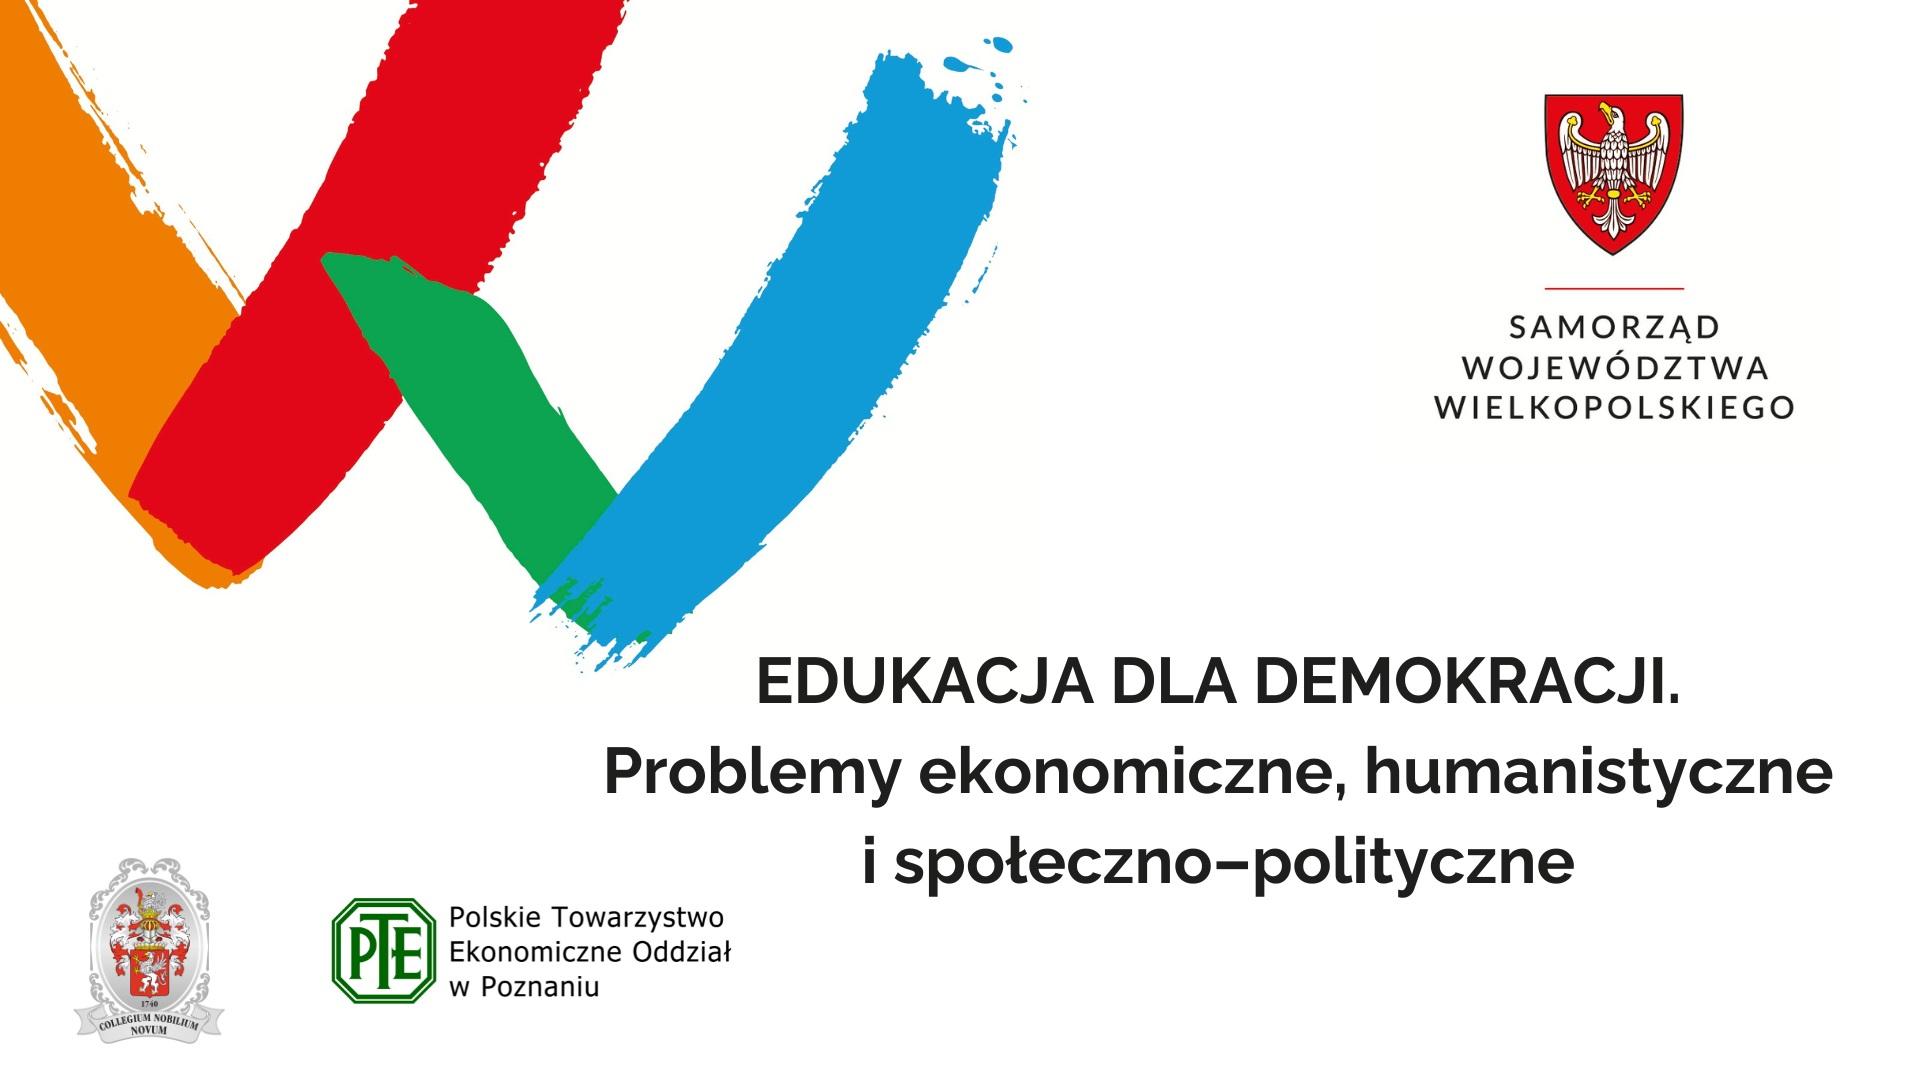 Konferencja Edukacja dla demokracji. Problemy ekonomiczne, humanistyczne i społeczno-polityczne” w dniu 29 września 2023 r. - zobacz więcej